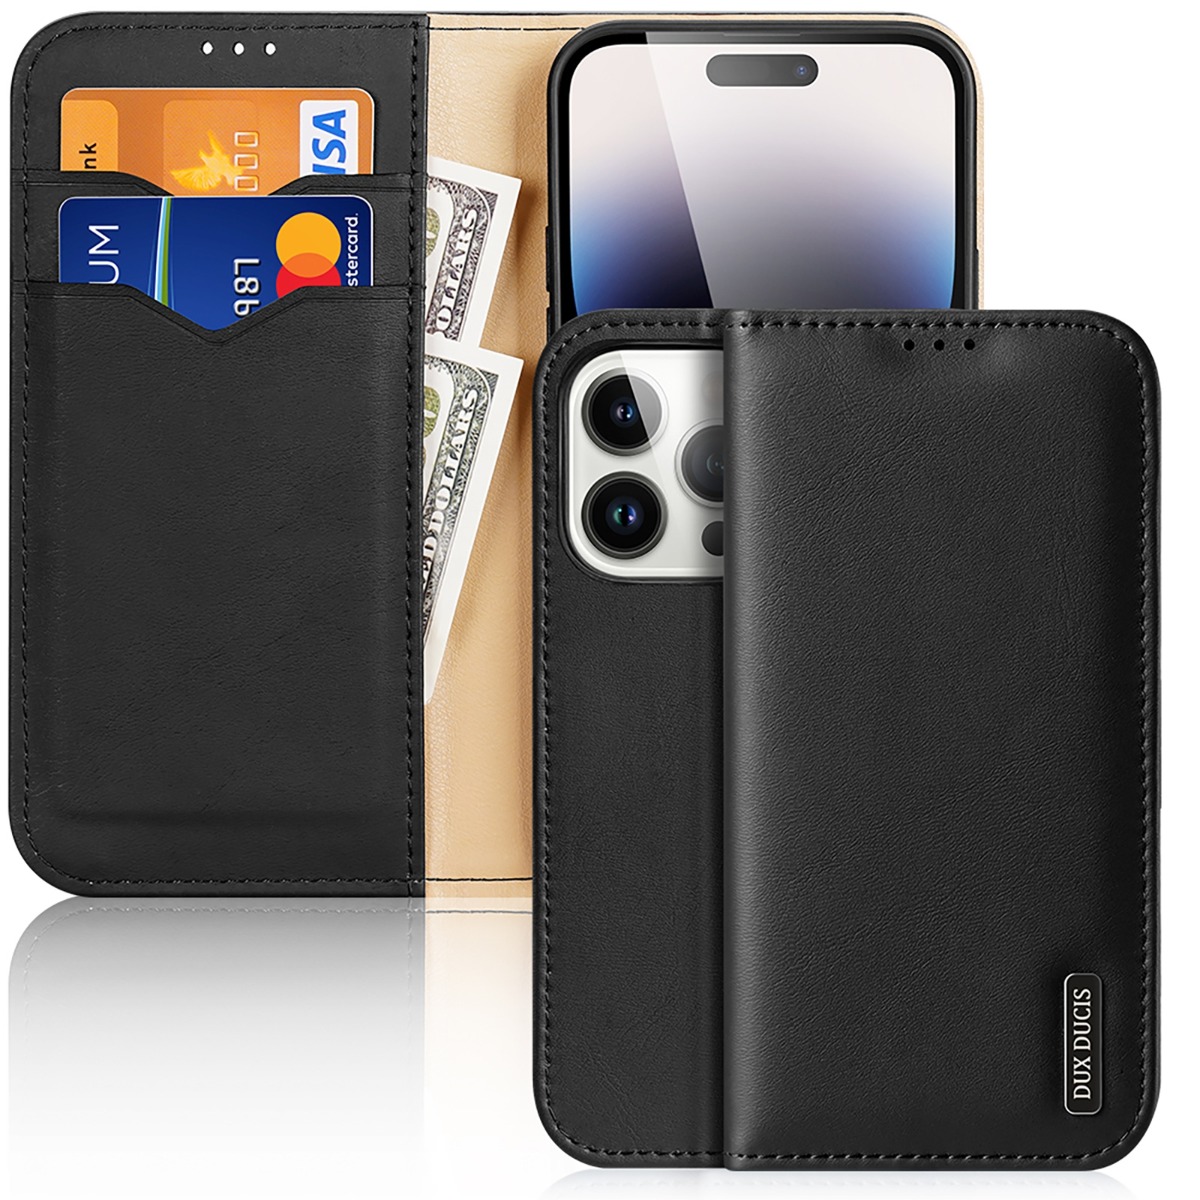 iPone 15 Pro Max Plus Leather Case